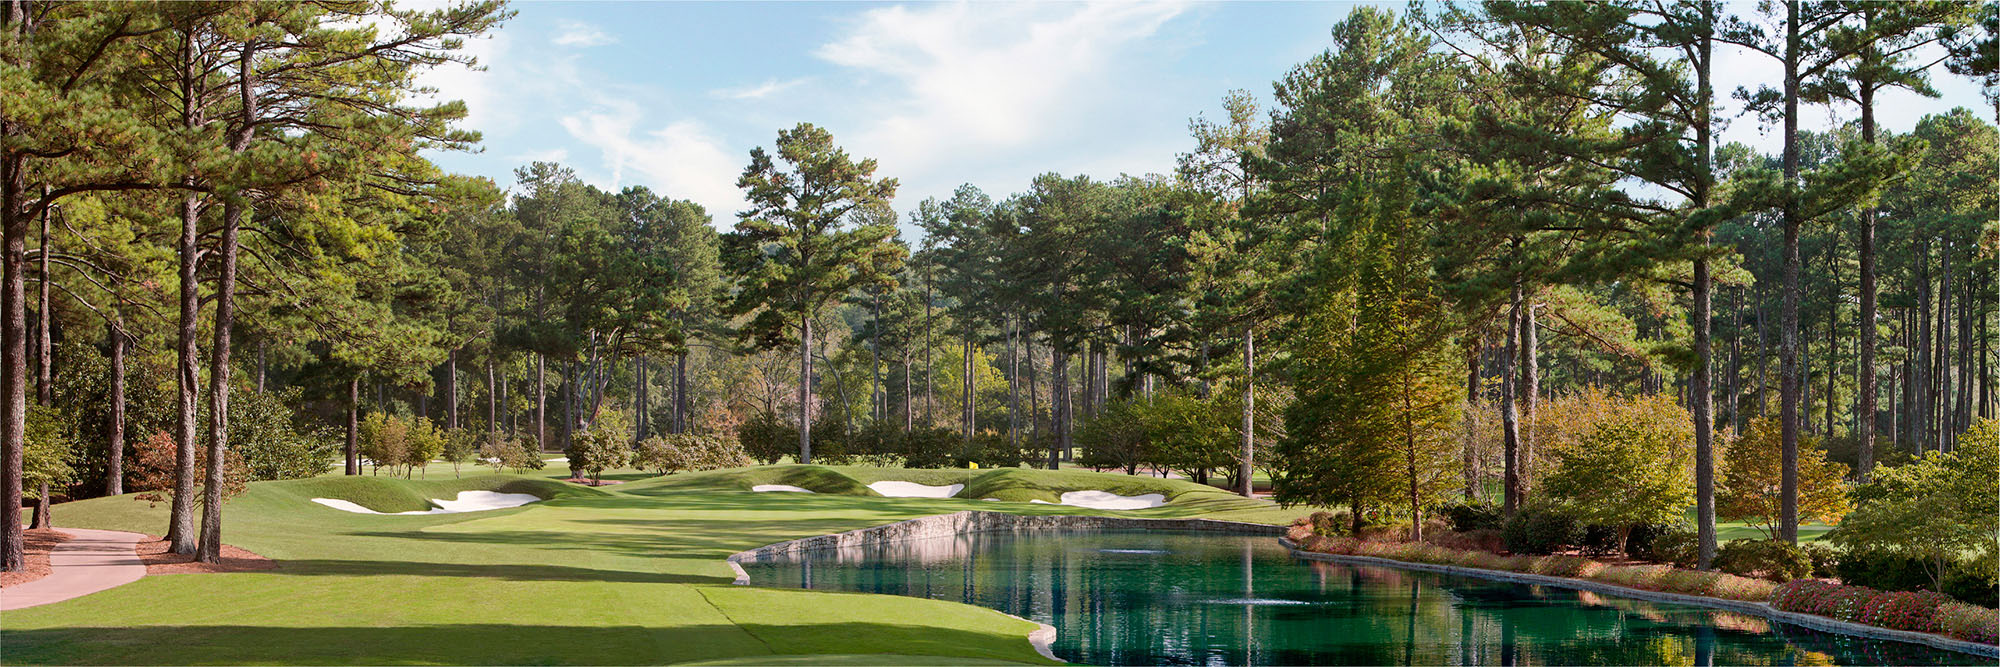 Golf Course Image - Atlanta Athletic Club No. 15